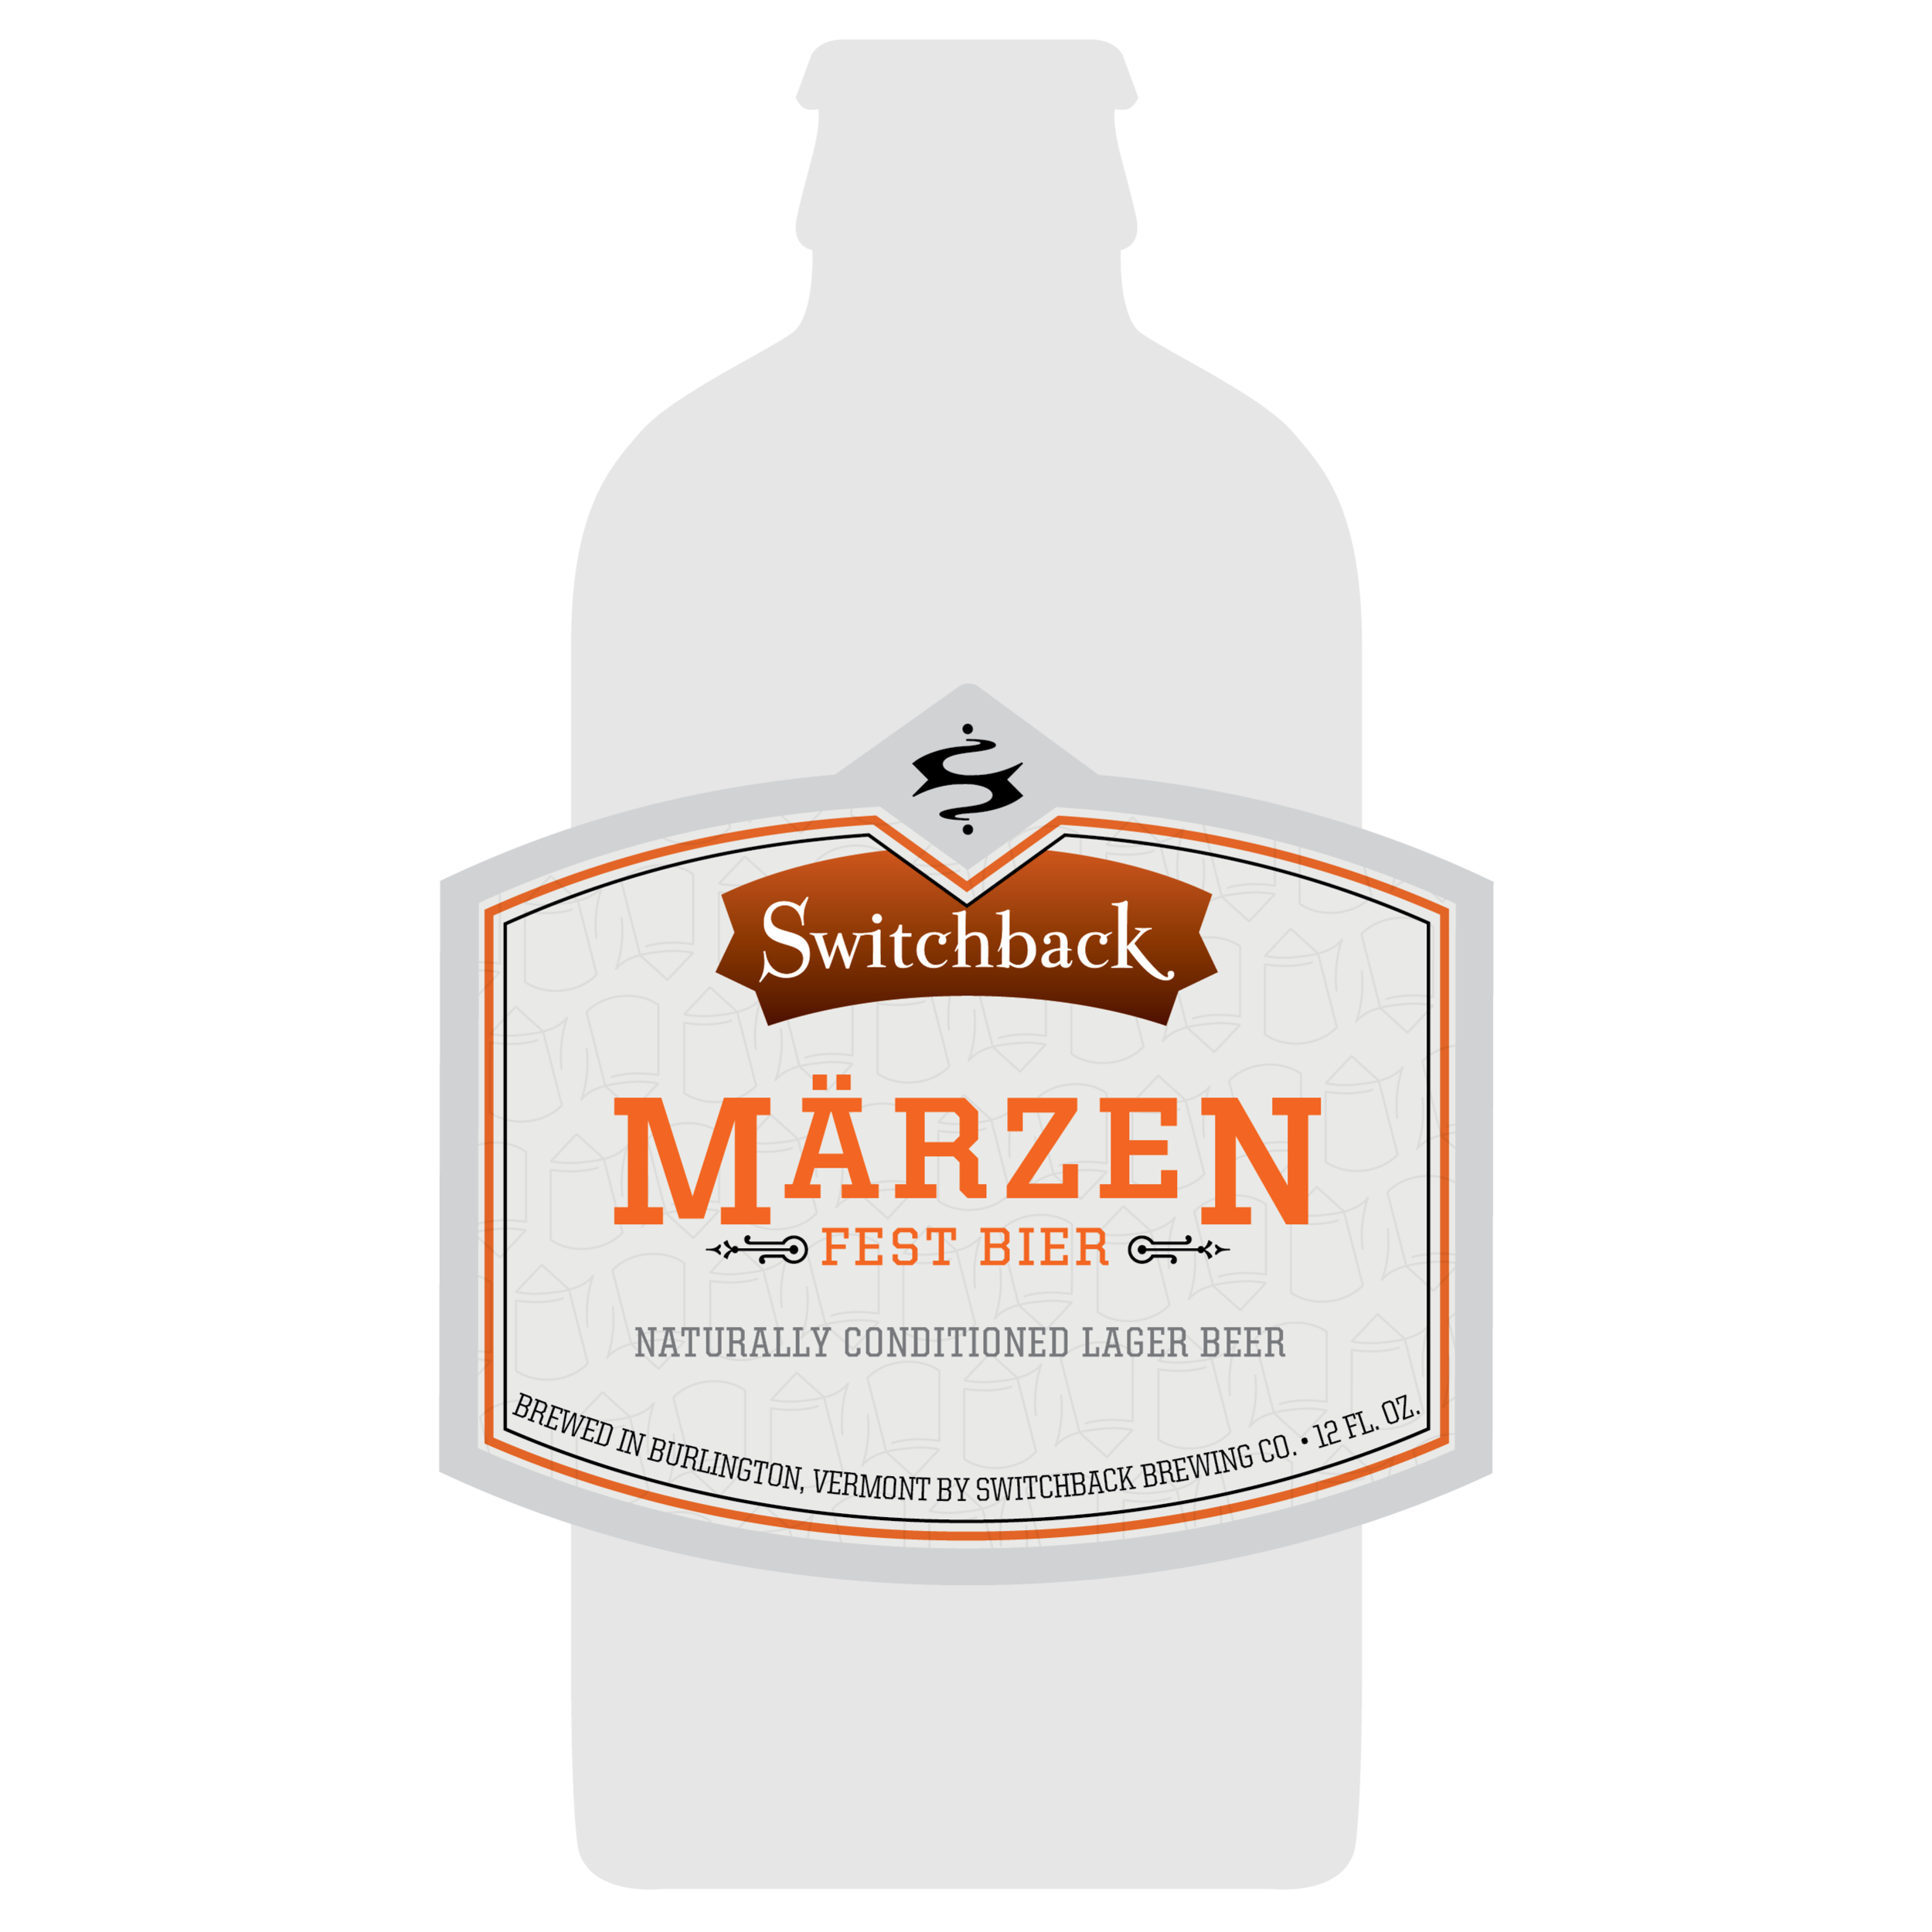 Interrobang's 12oz bottle label design for Switchback Märzen Fest Bier